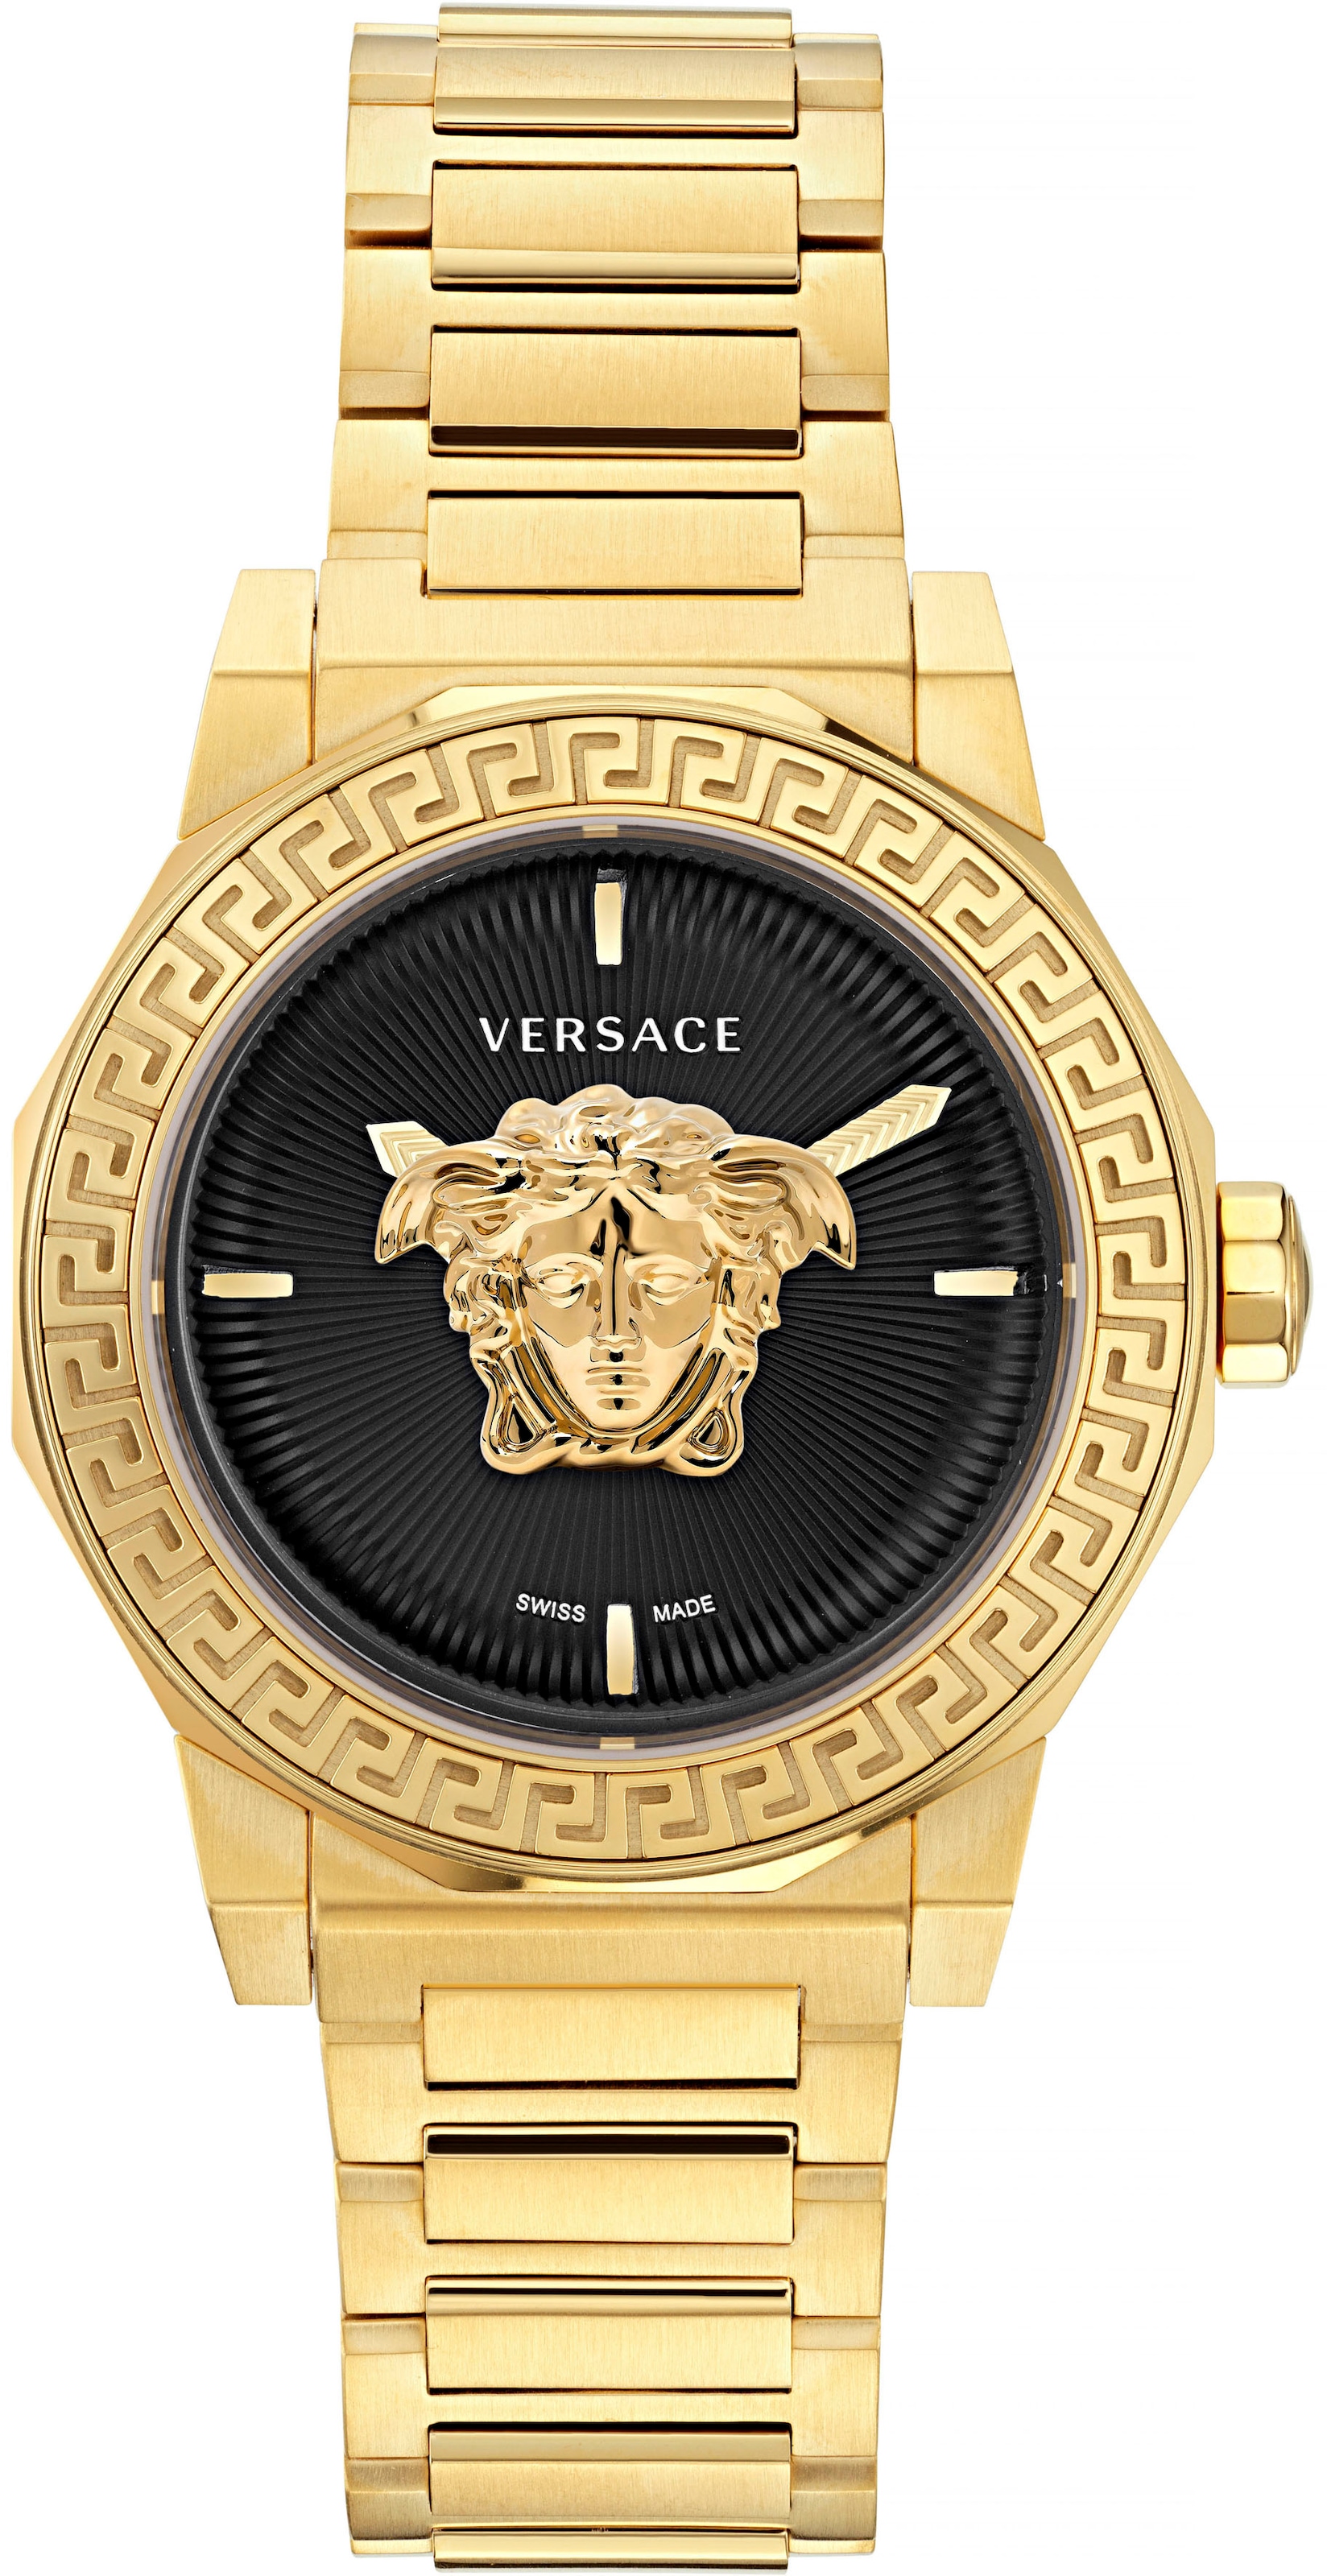 Damenuhr Versace kaufen günstig